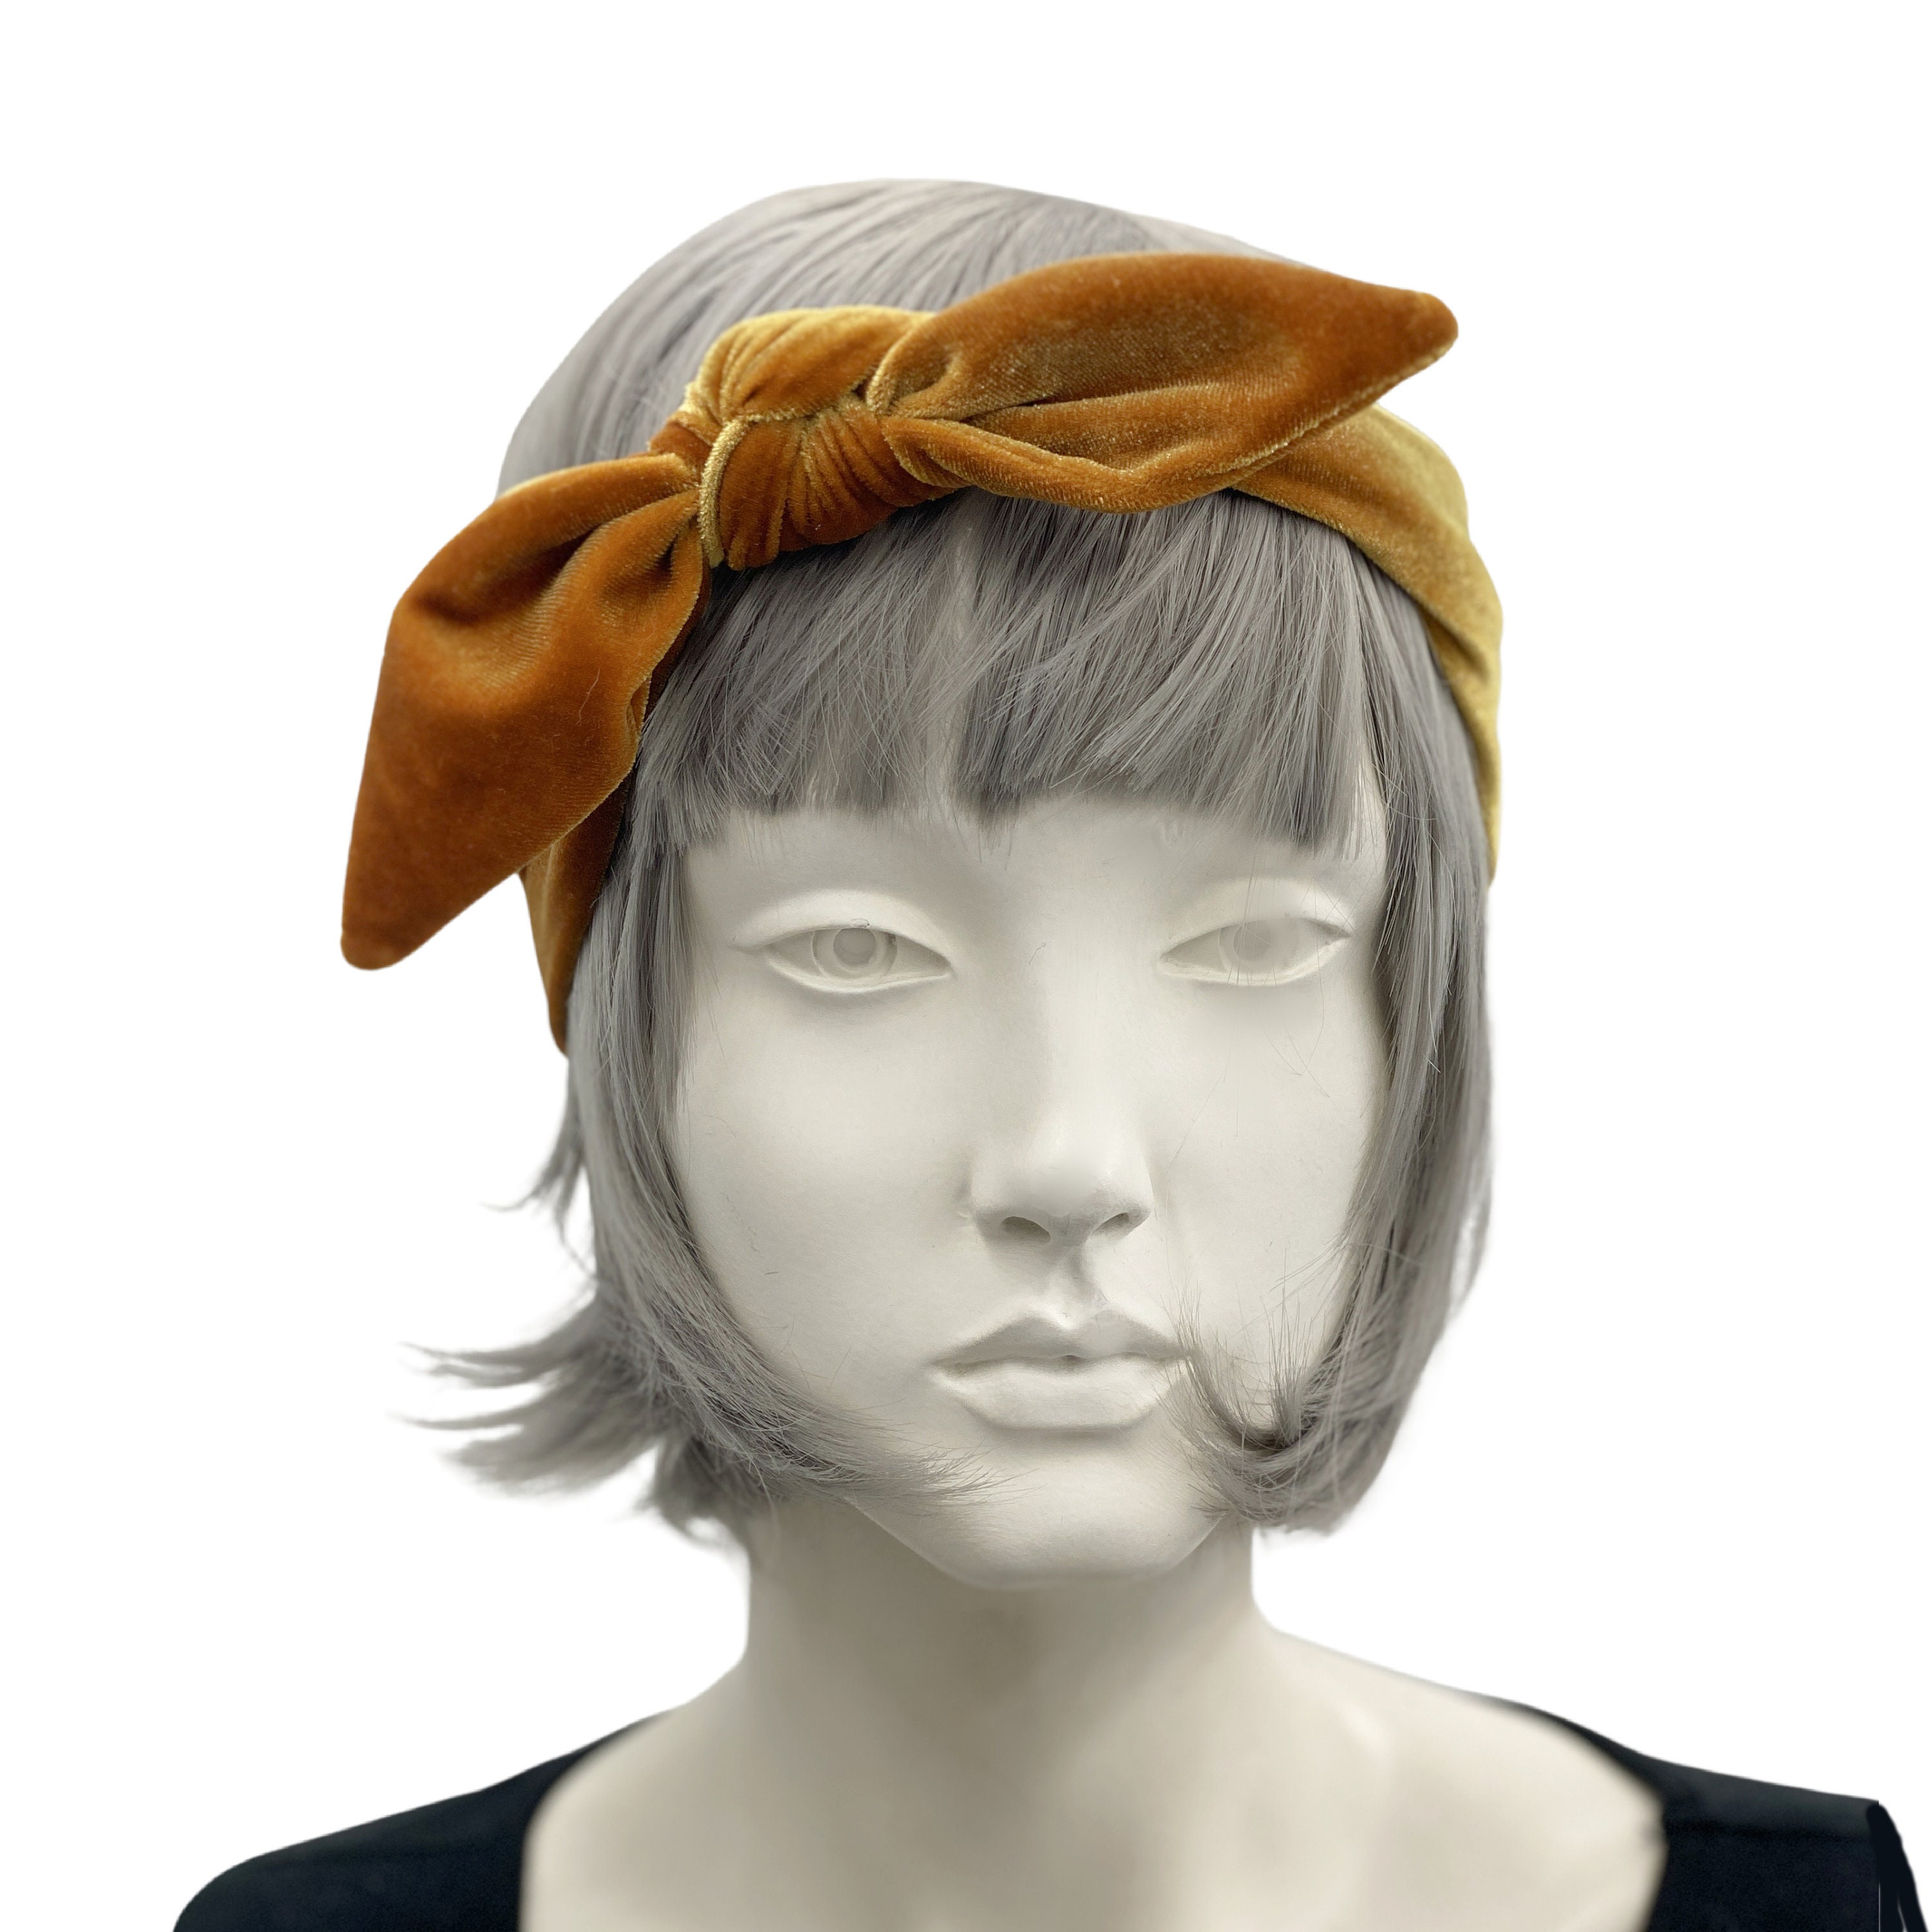 Handmade headband for women Great gift for her Taupe brown velvet knot headband made from the softest velvet